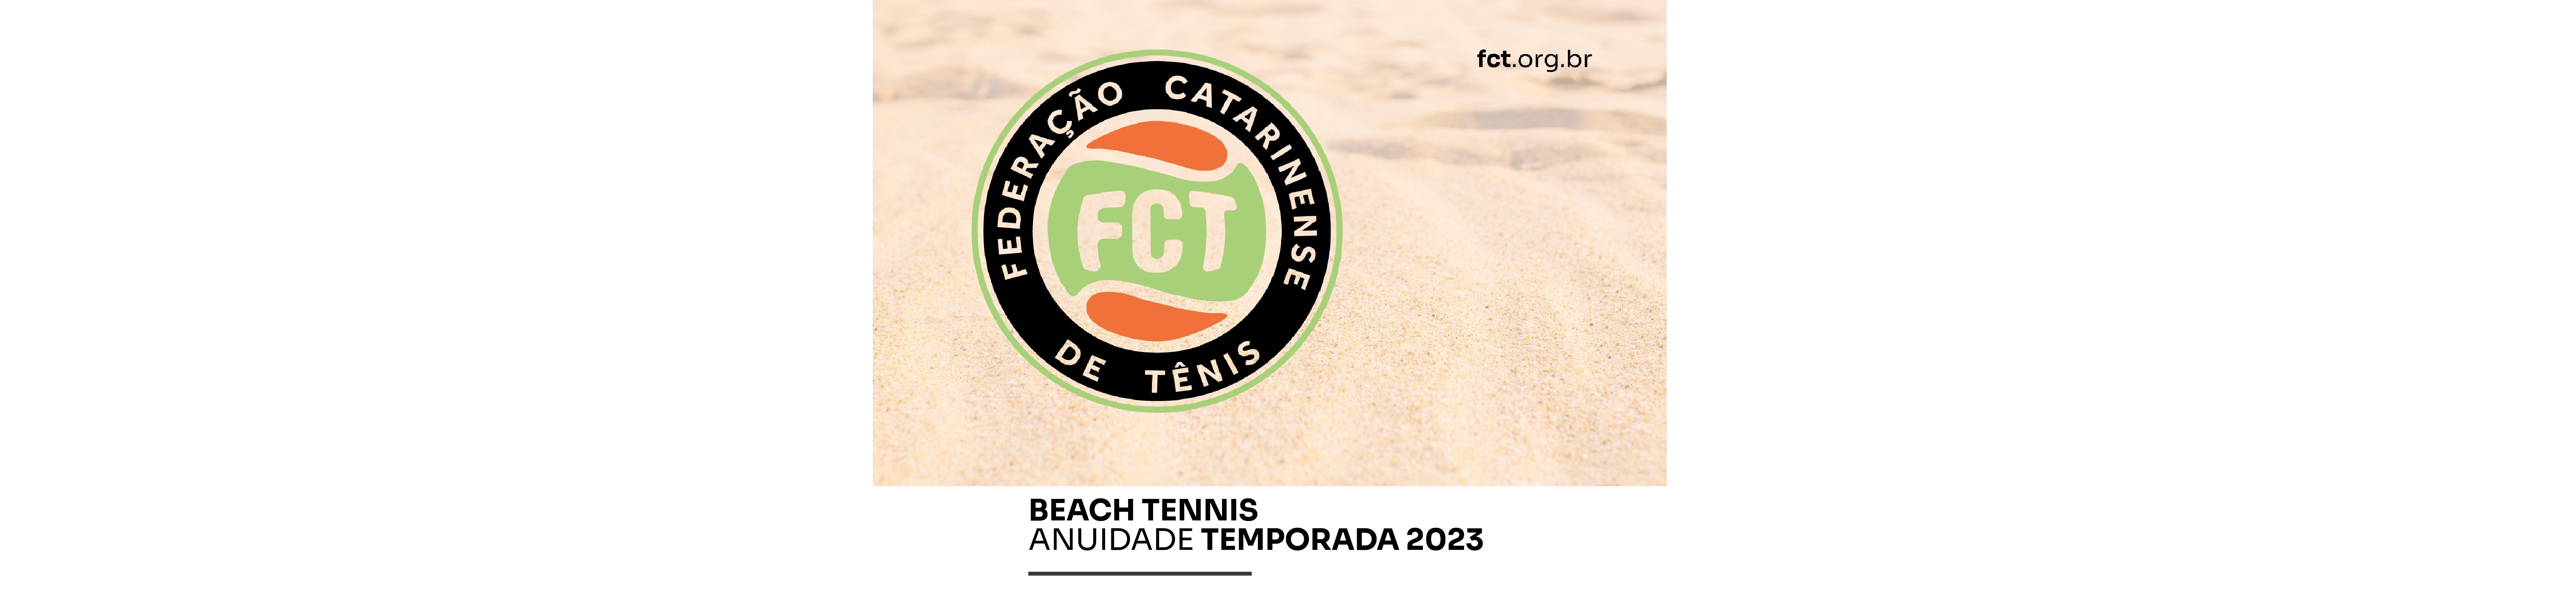 Anuidade Beach Tennis - Temporada 2023